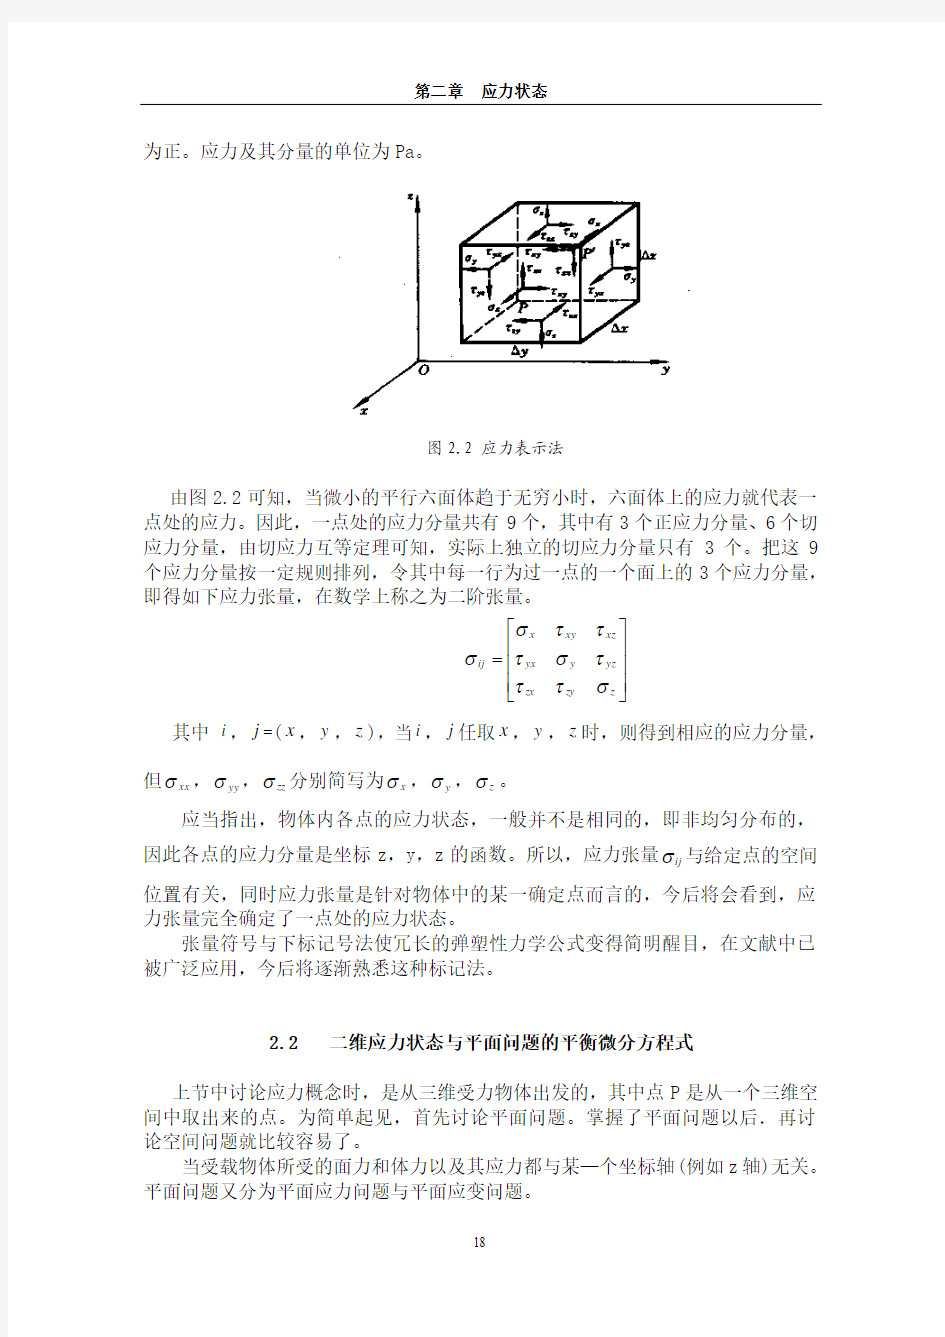 第二章应力状态 弹塑性力学基本理论及应用_刘土光